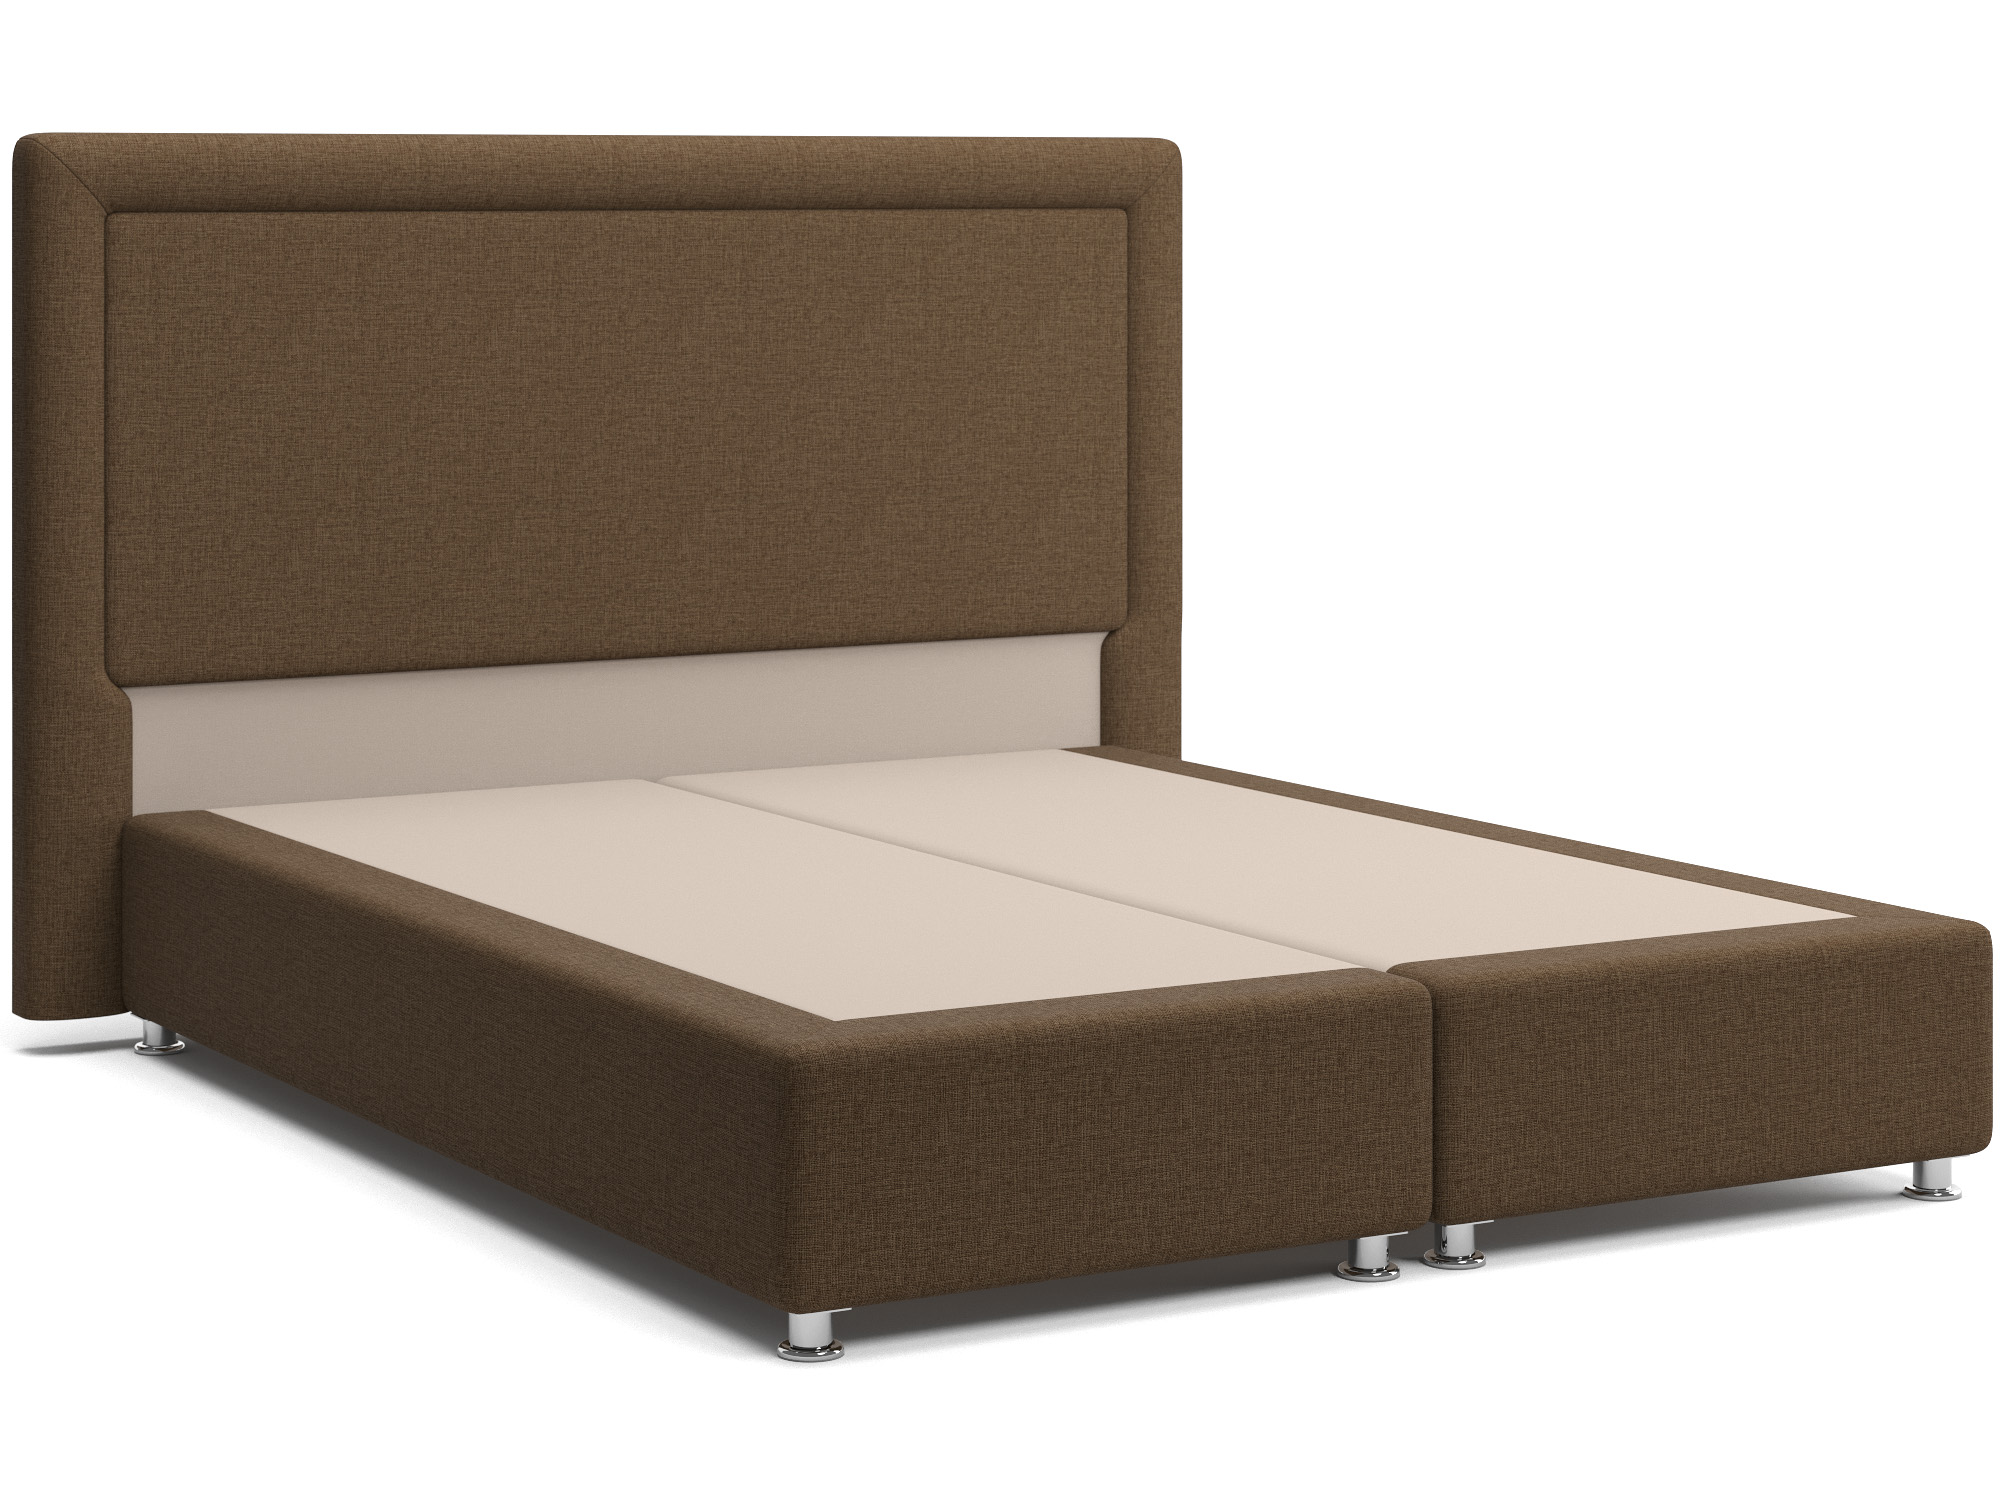 Интерьерная кровать Оливия (160х200) Коричневый, Массив, ДСП интерьерная кровать марта 160х200 коричневый массив дсп